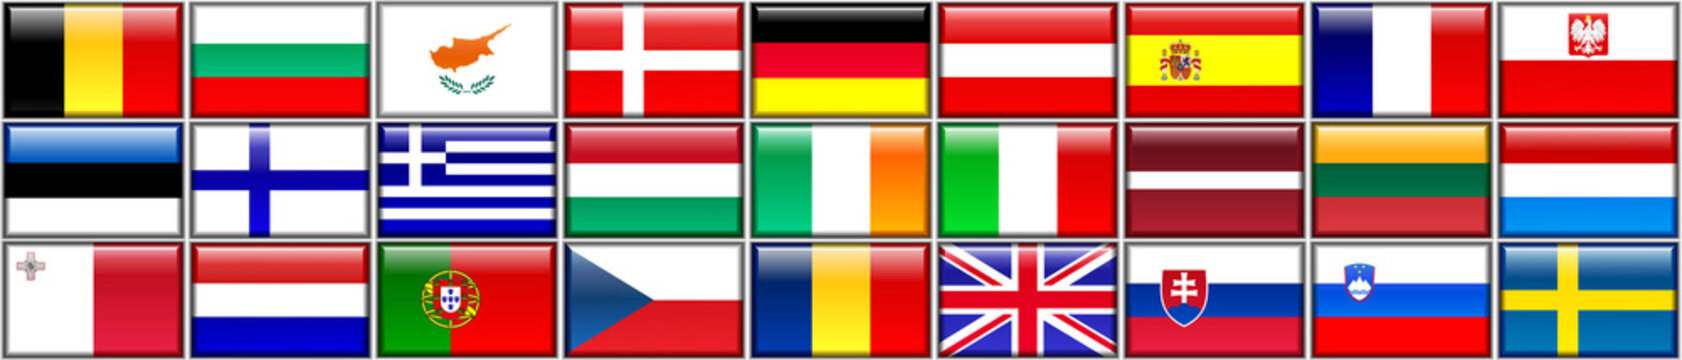 Flags Of Europeans Members